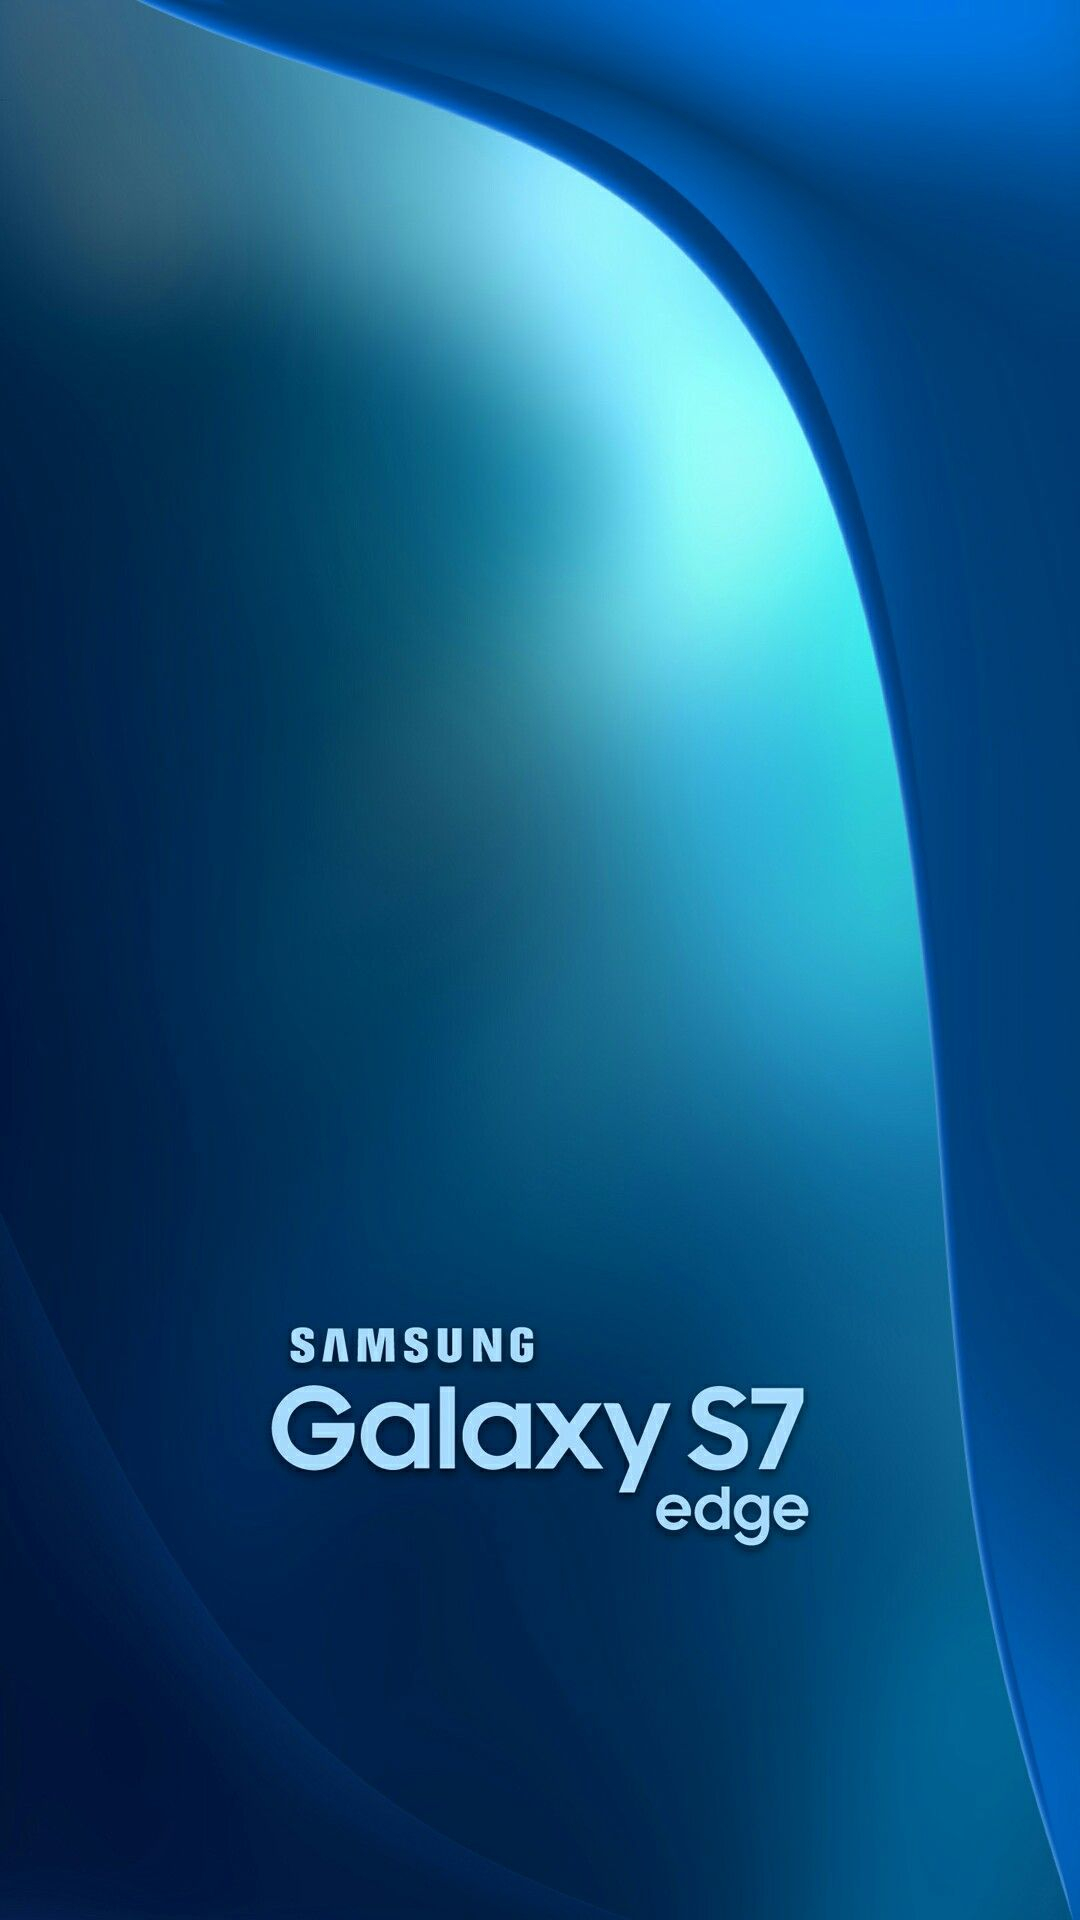 1080x1920 10 Samsung logo ideas | puhelimen taustakuvat, taustat, logot